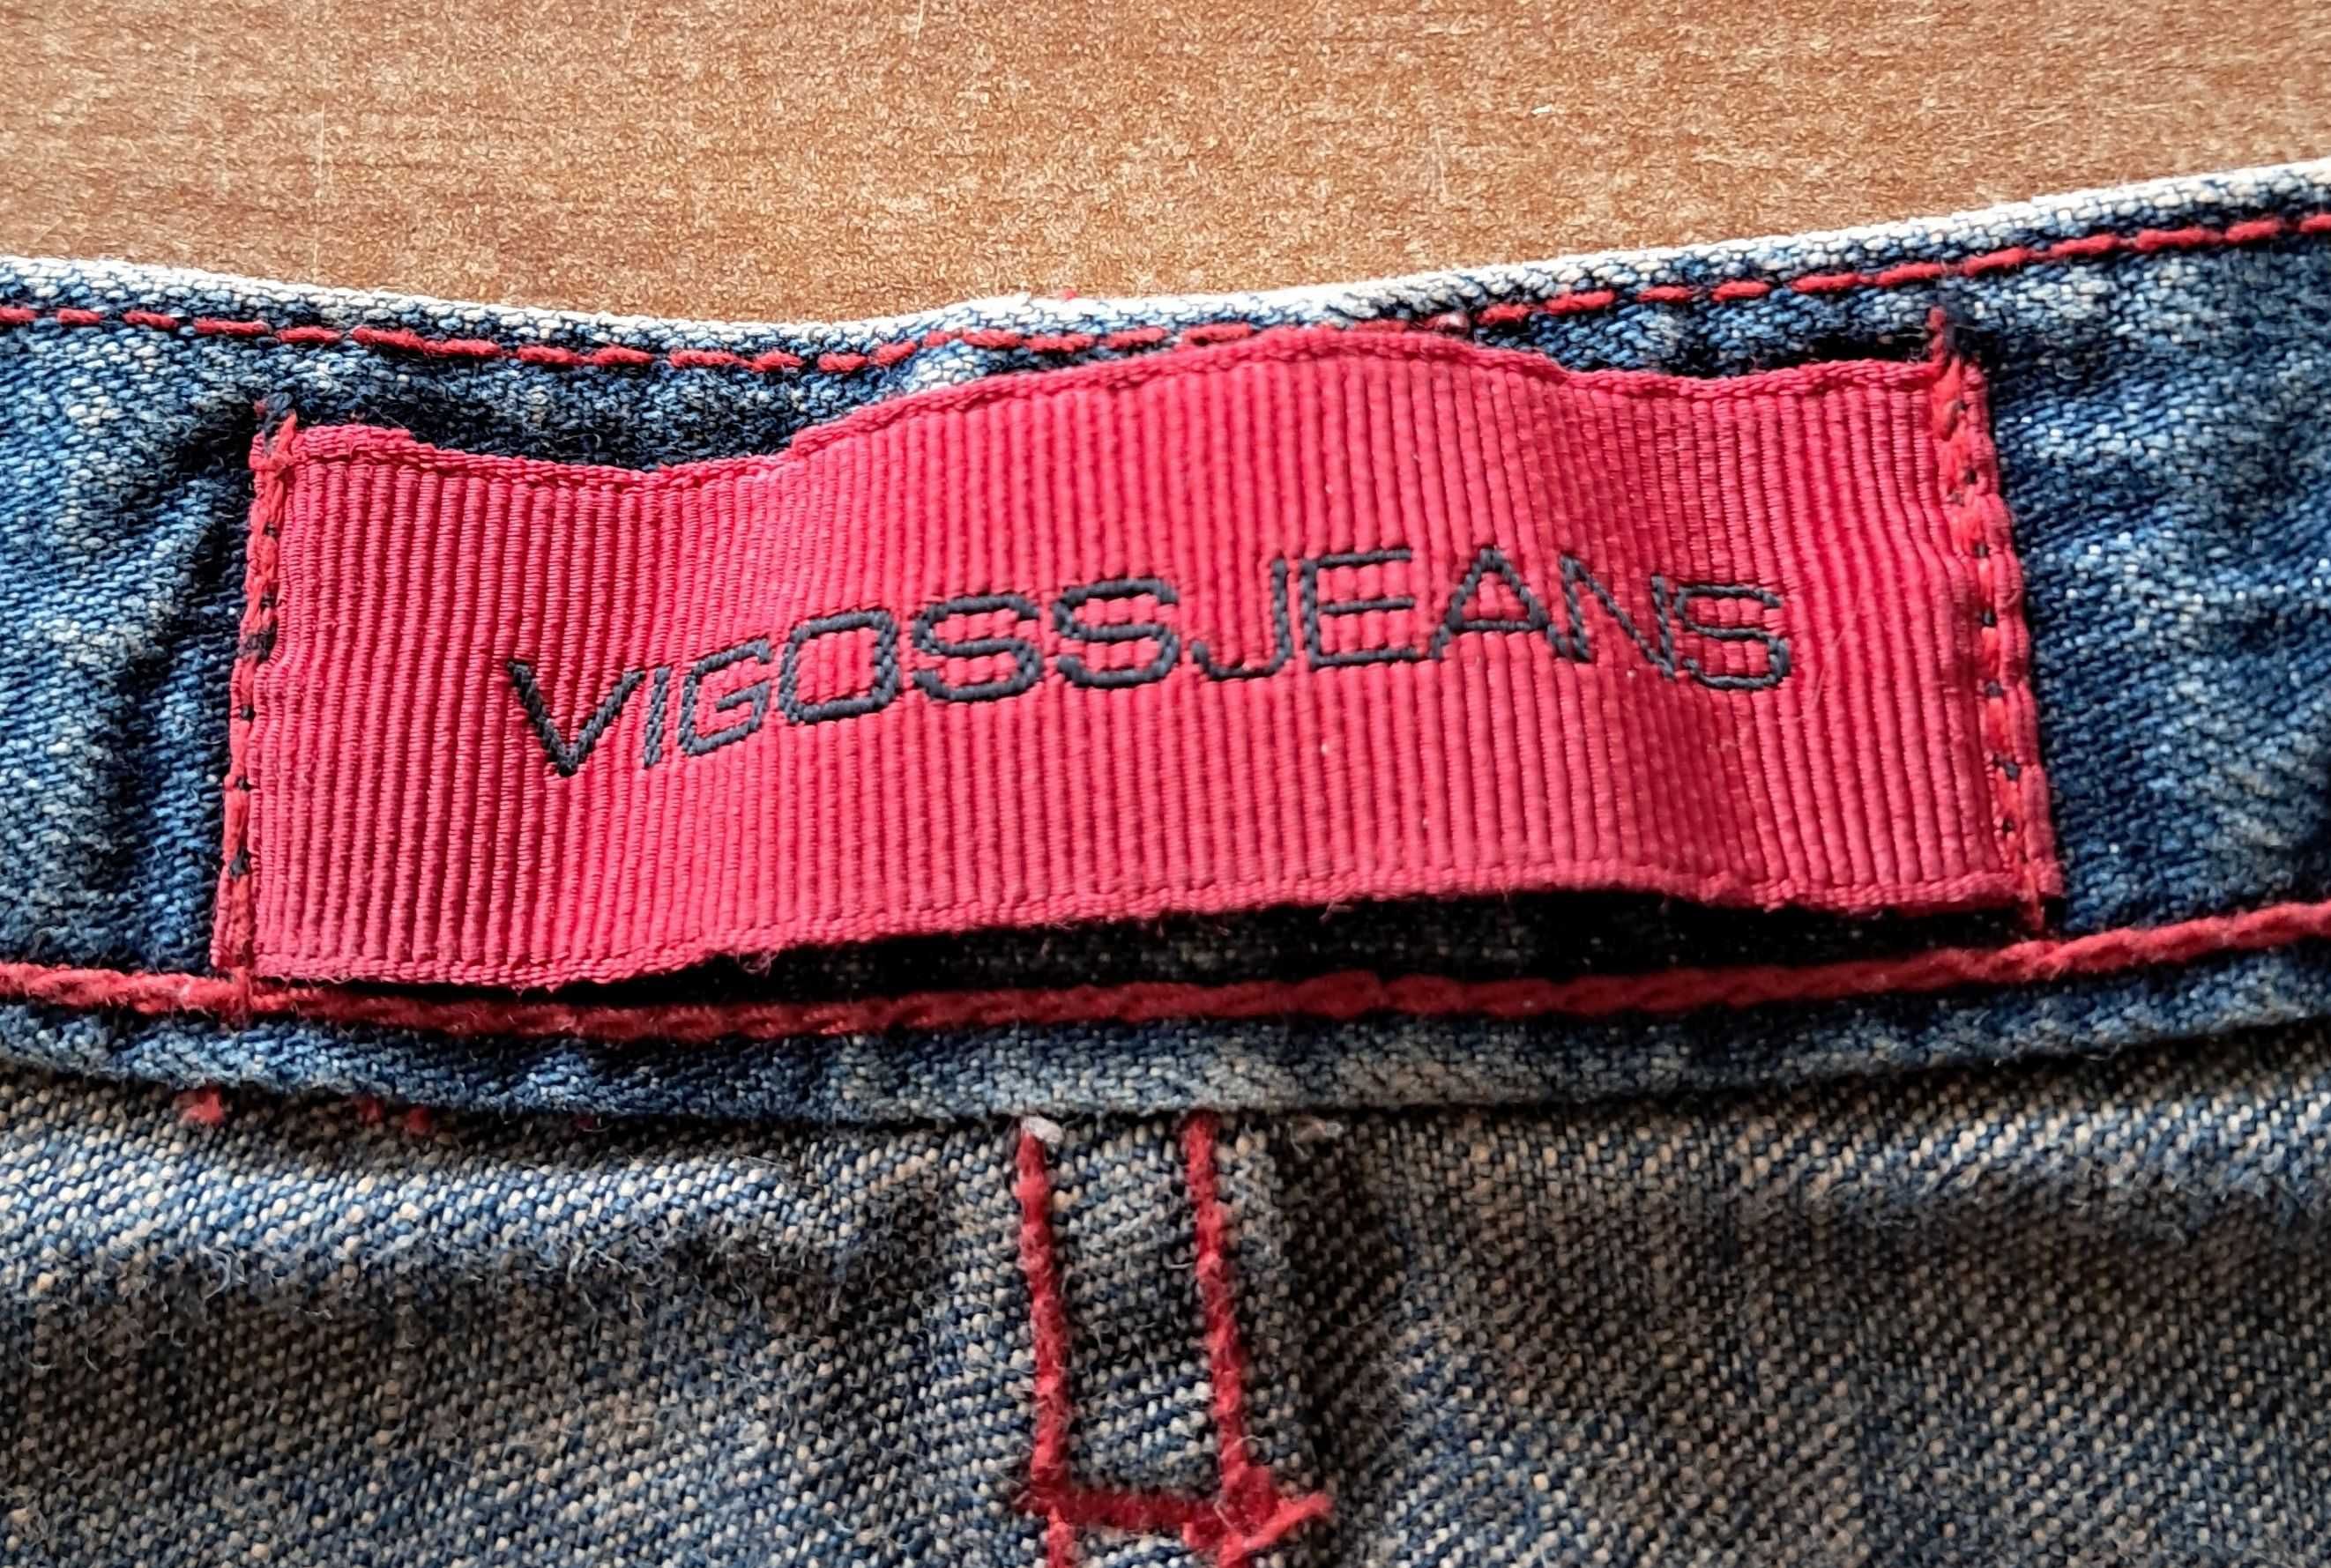 Расклешенные джинсы  Vigoss W29xL33 100%